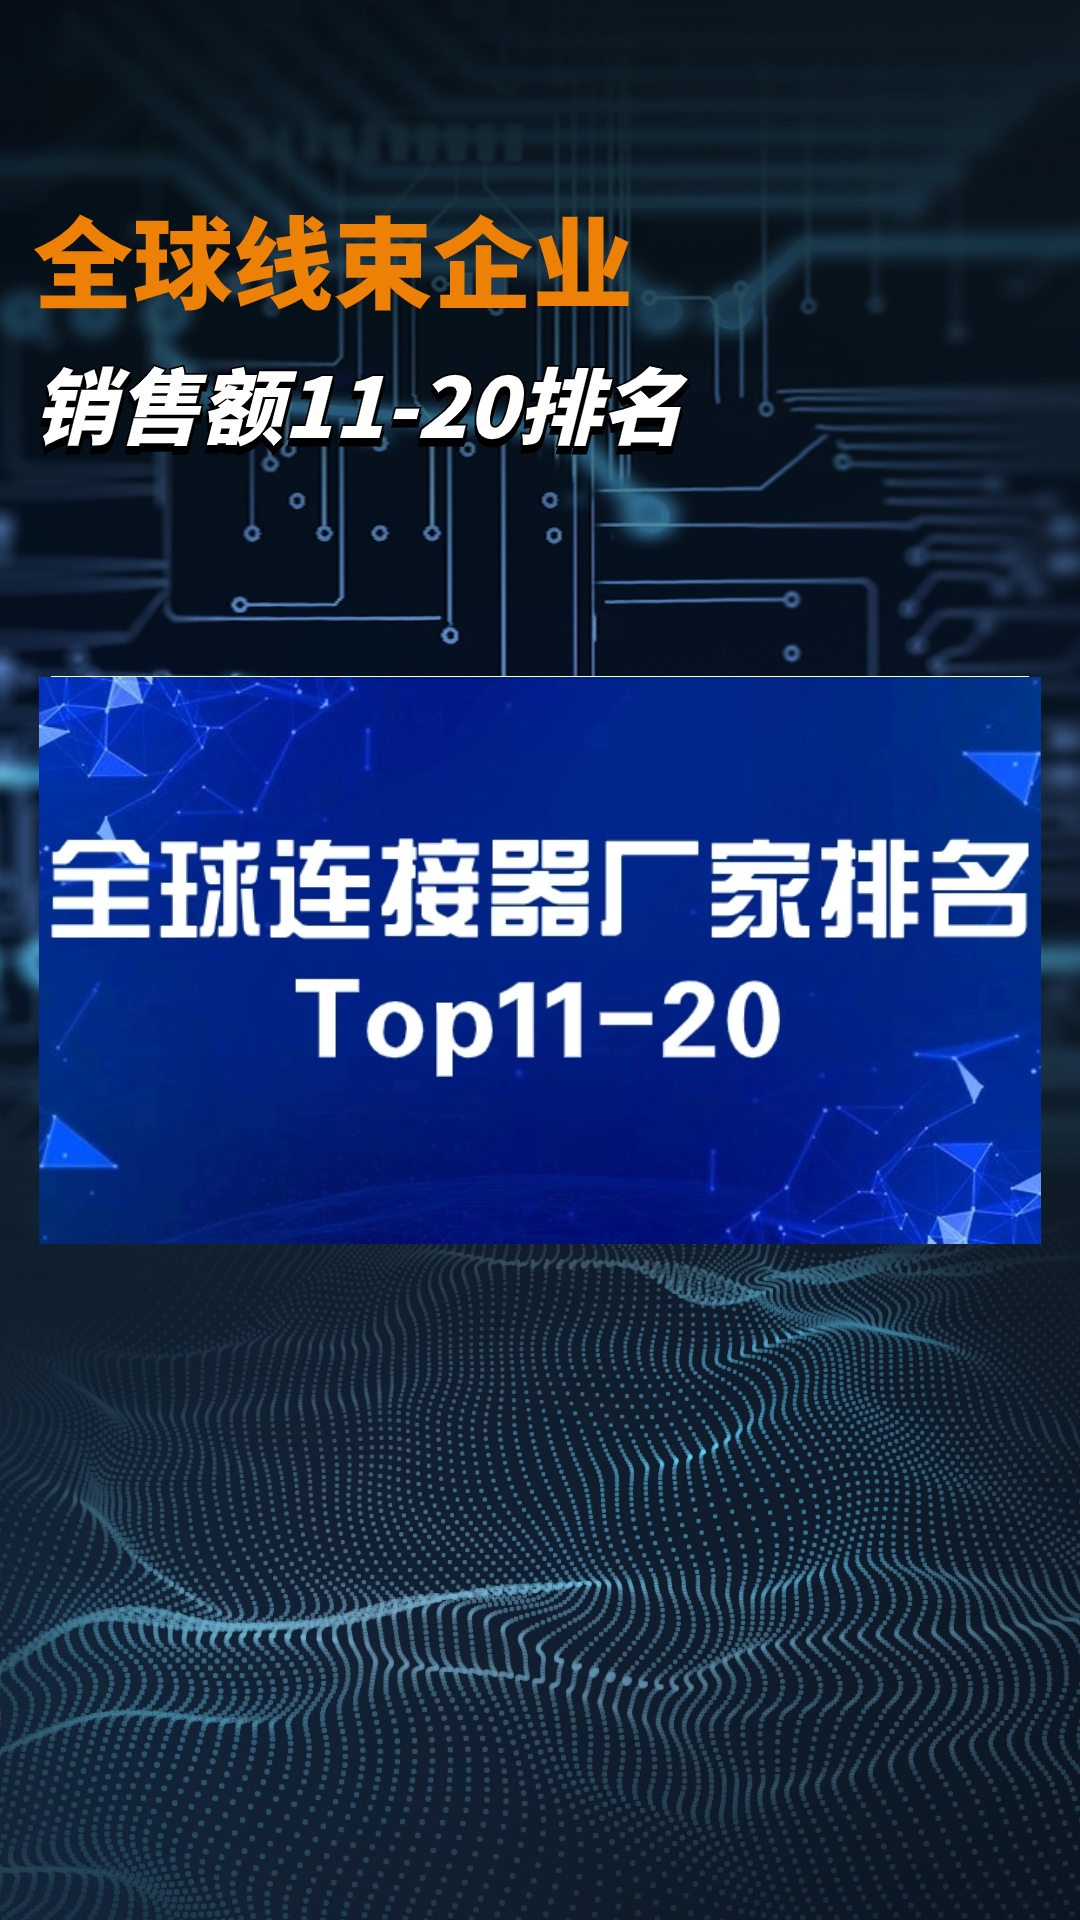 全球连接器厂家排名TOP11-20